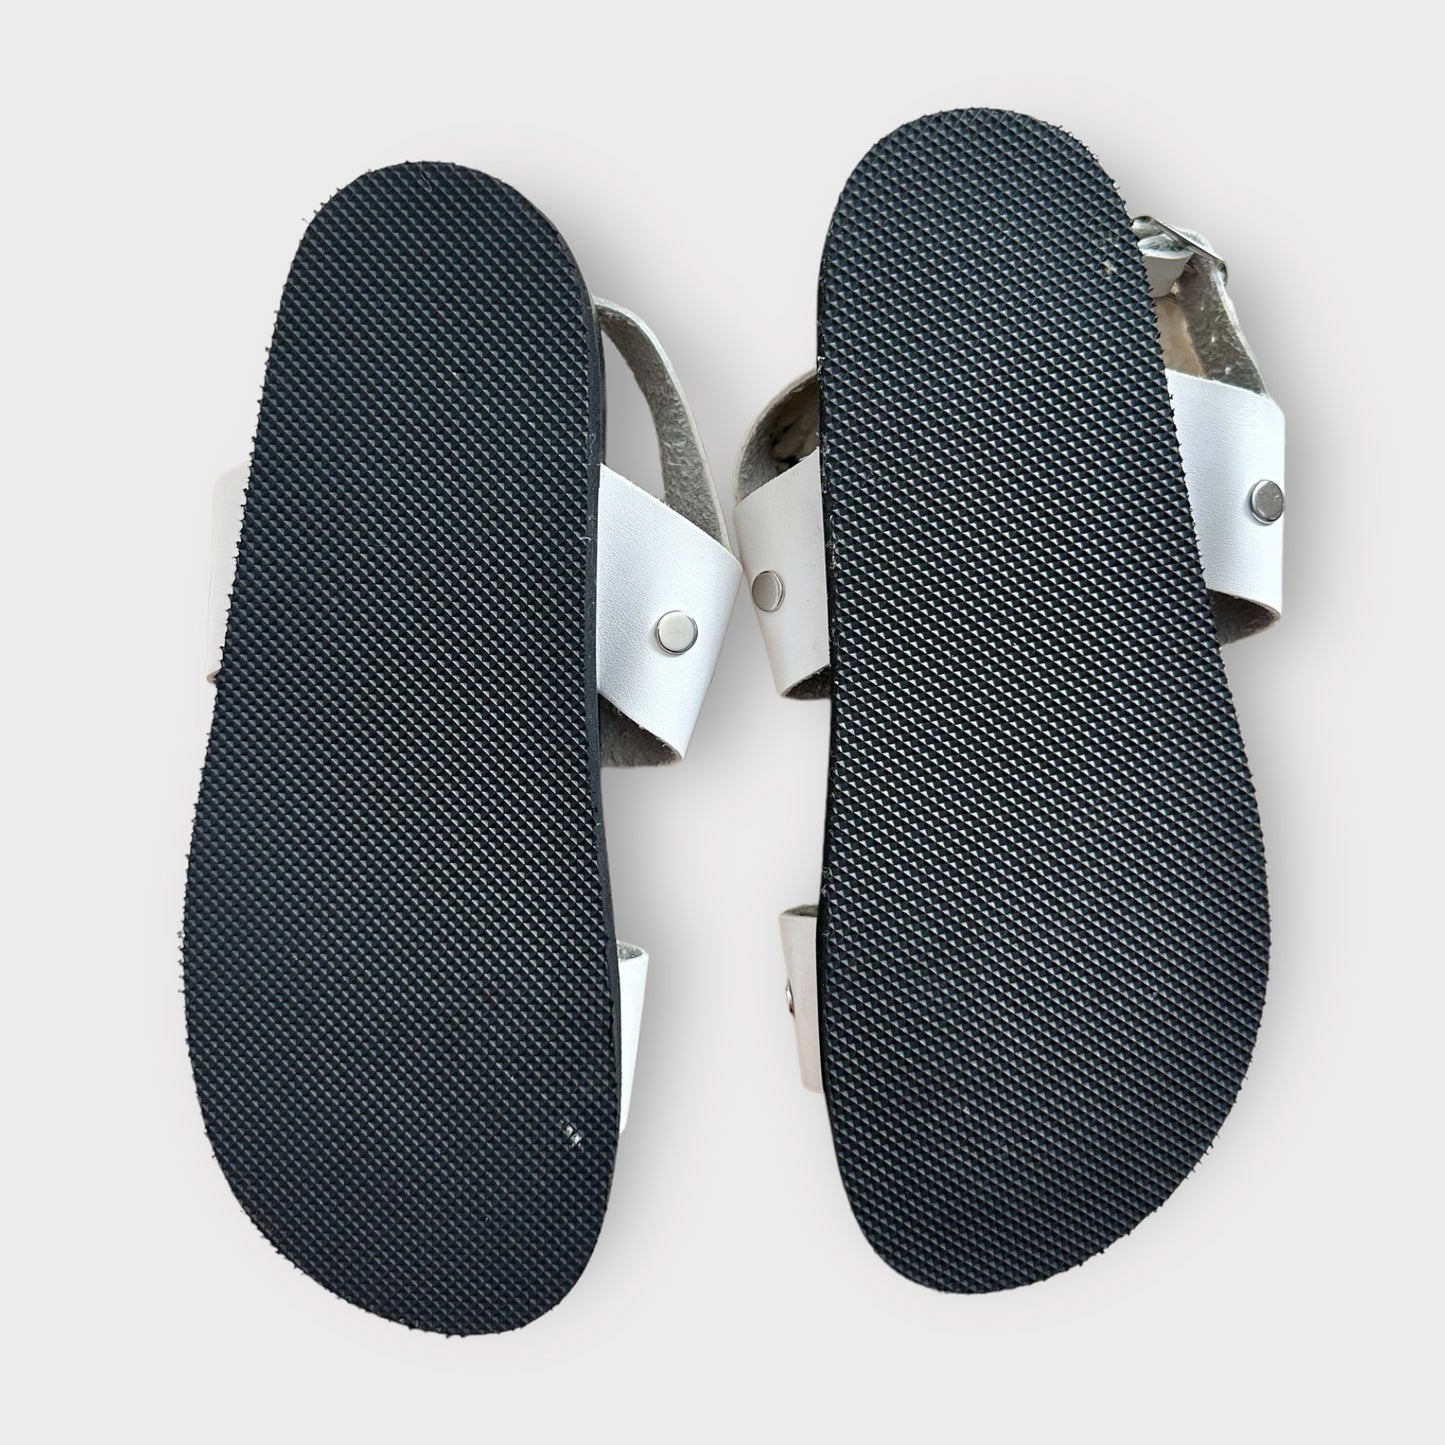 Office white studded sliders sandals EU 38 UK 5 new bnwot